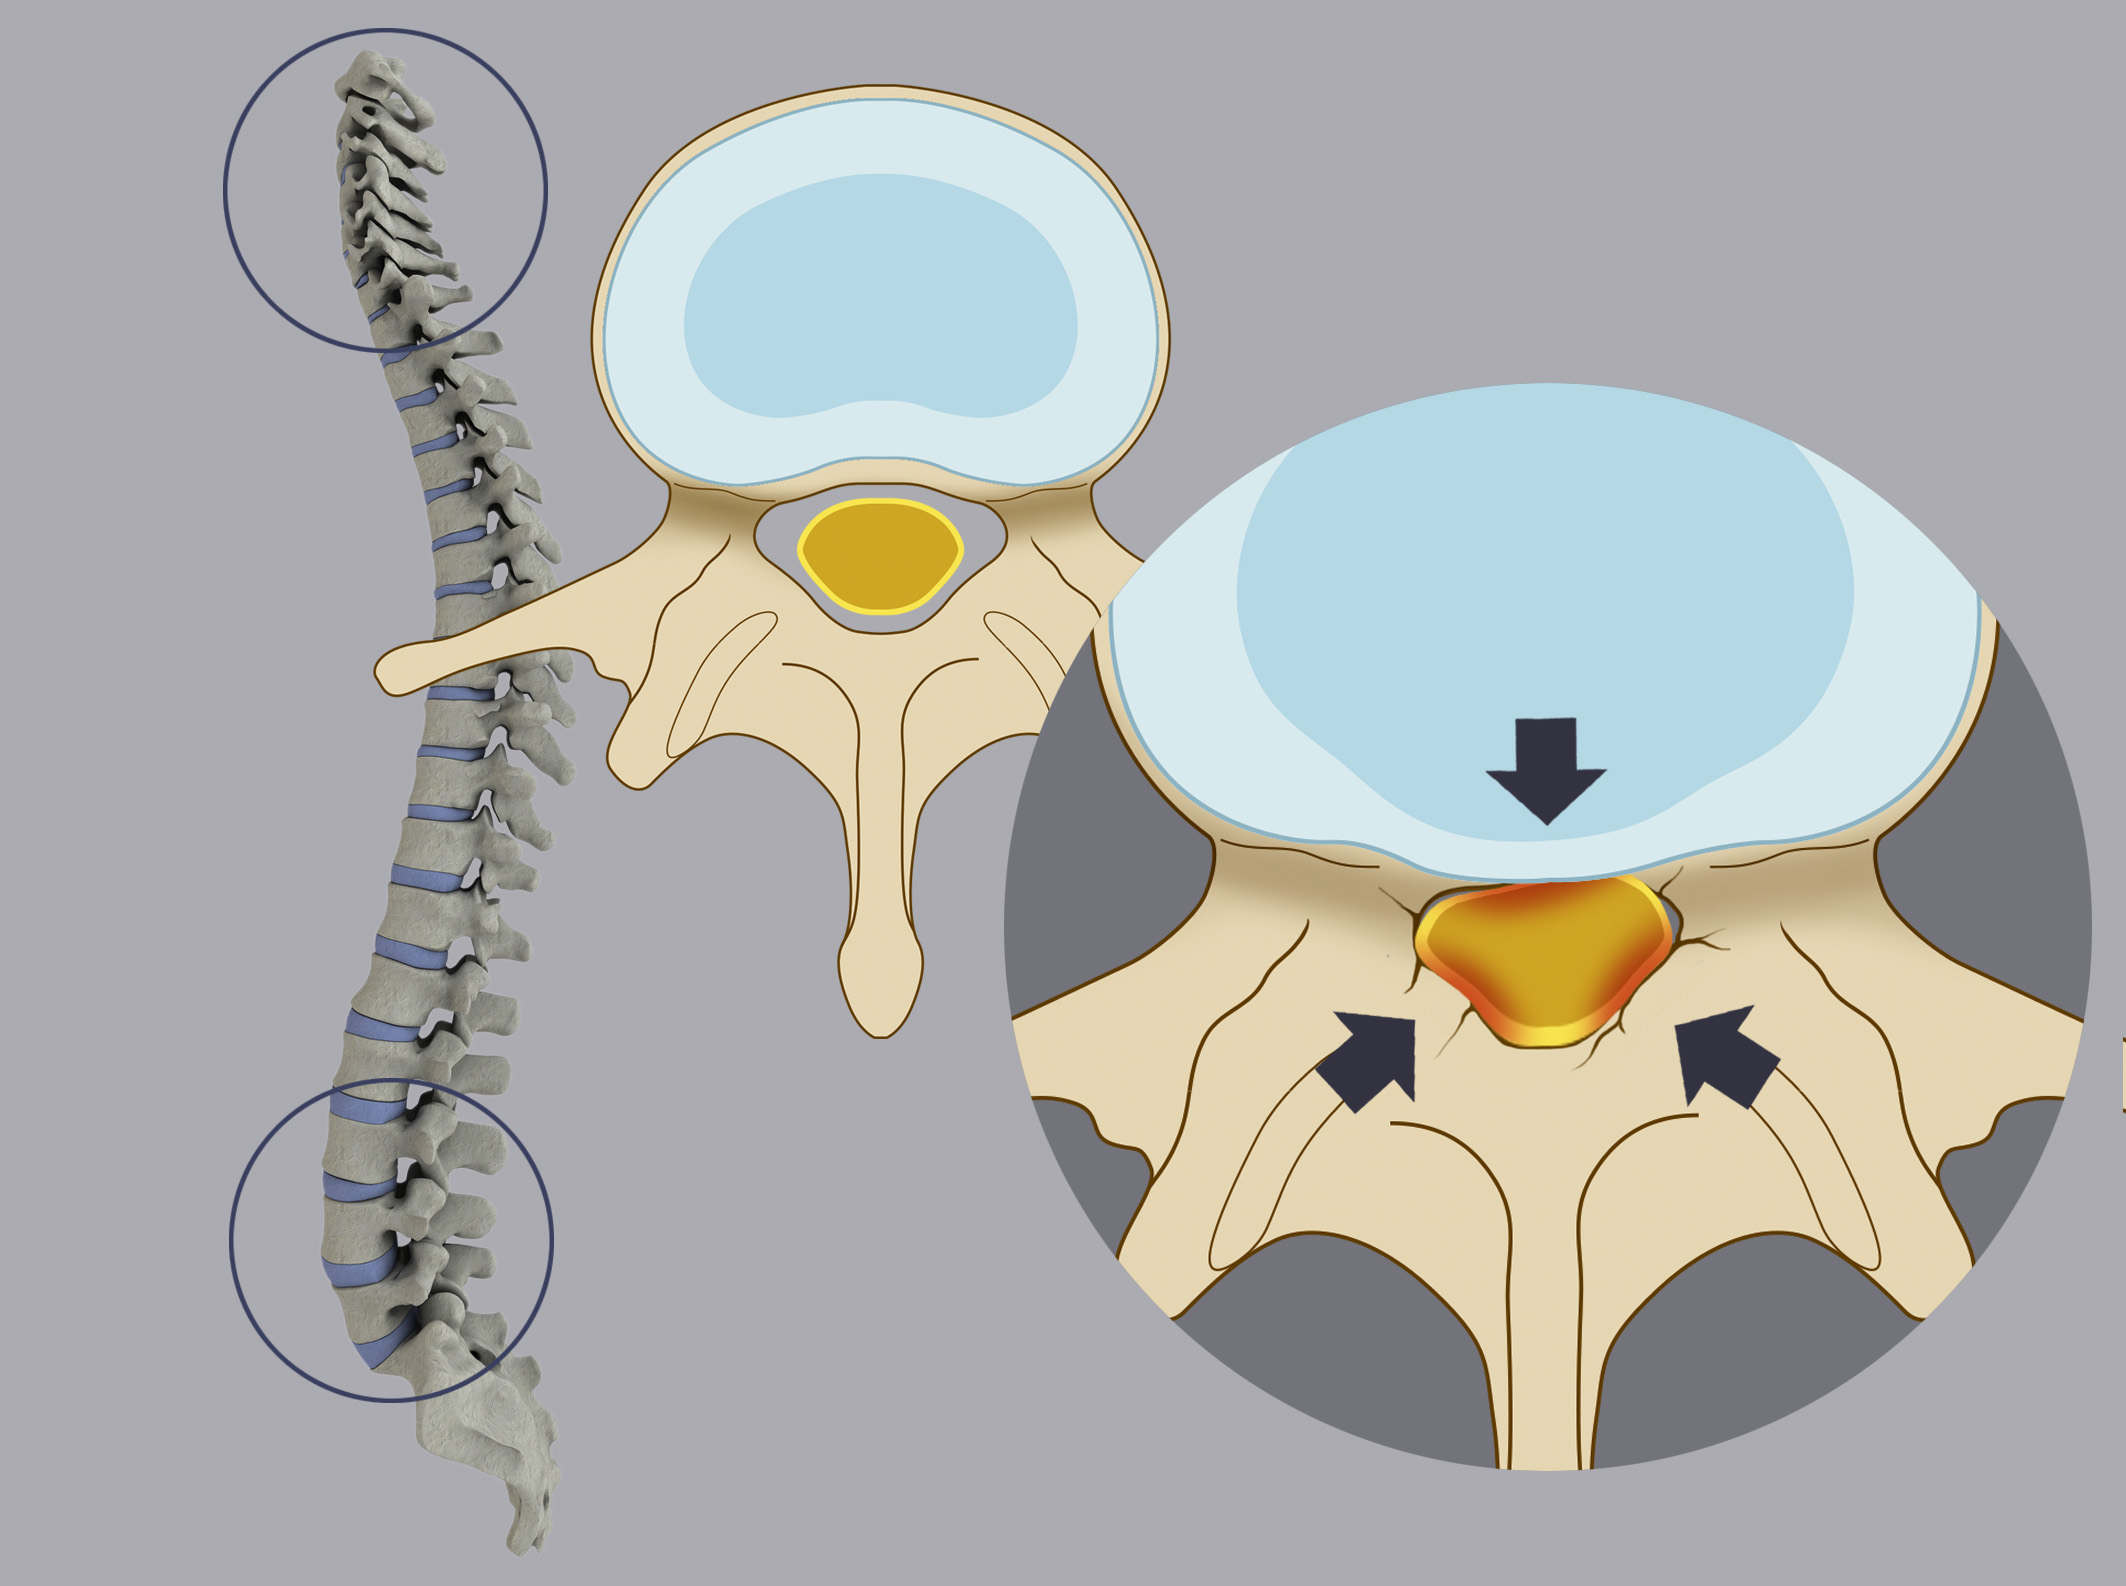  Stenosi del canale vertebrale. La stenosi è un restringimento del canale vertebrale, che determina una compressione sul sacco durale e sulle radici nervose.